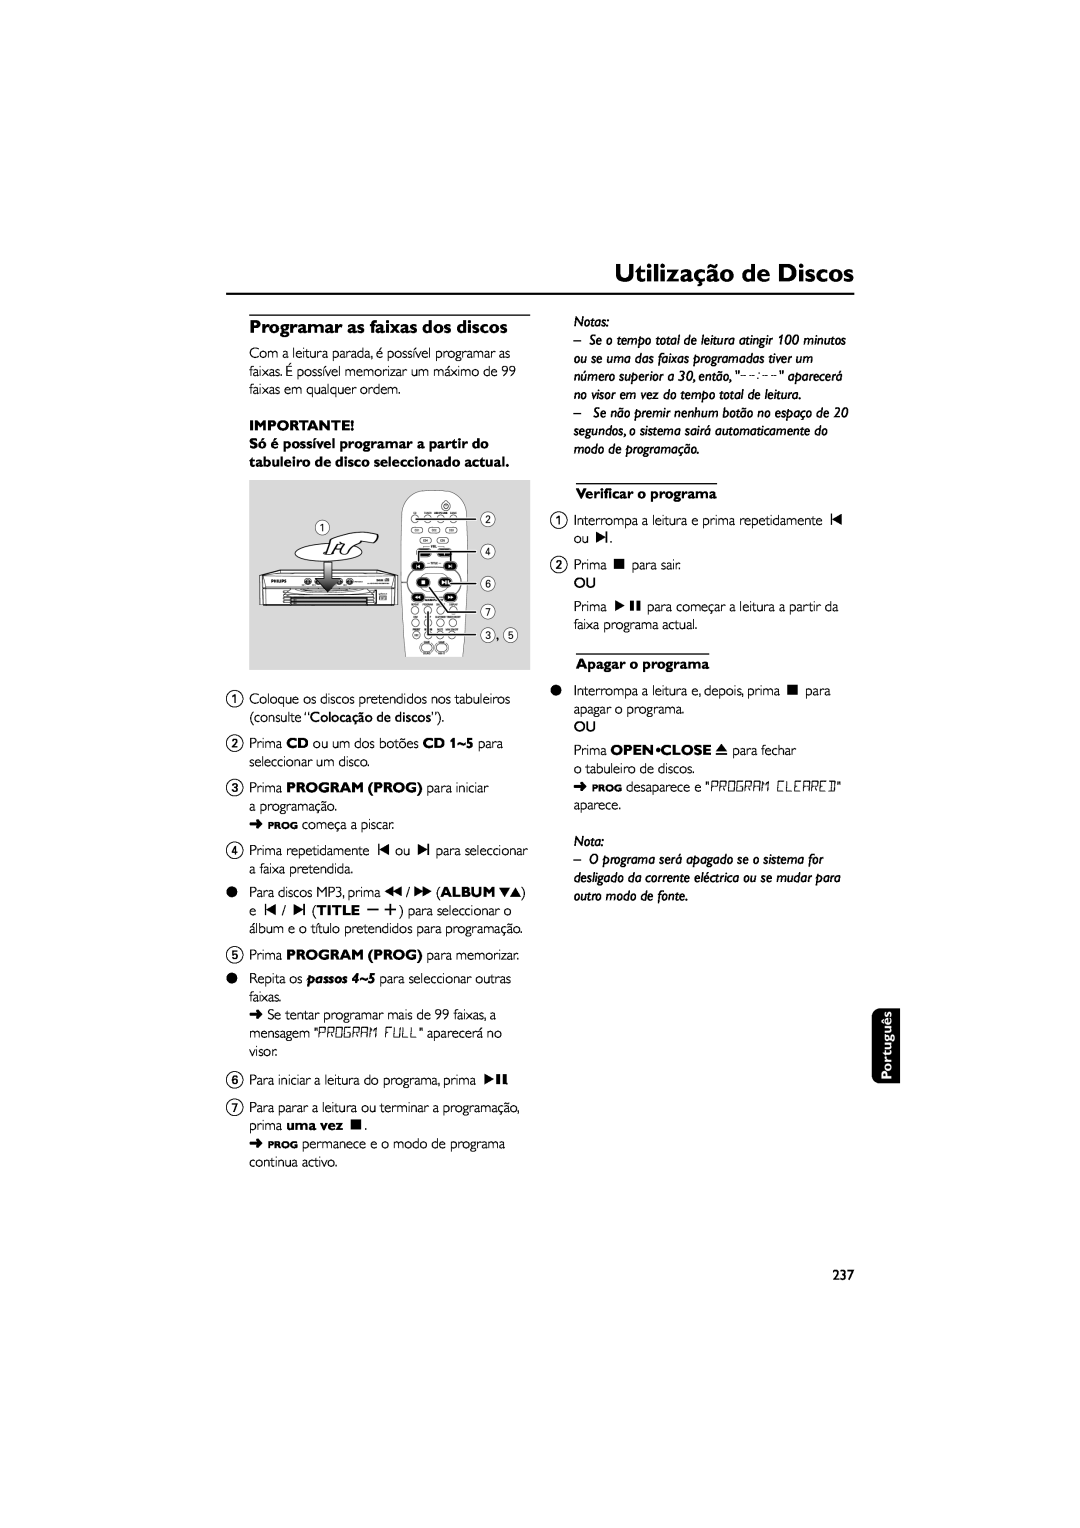 Philips FWM589 manual Utilização de Discos, Importante, Notas, Verificar o programa, Apagar o programa, Português 